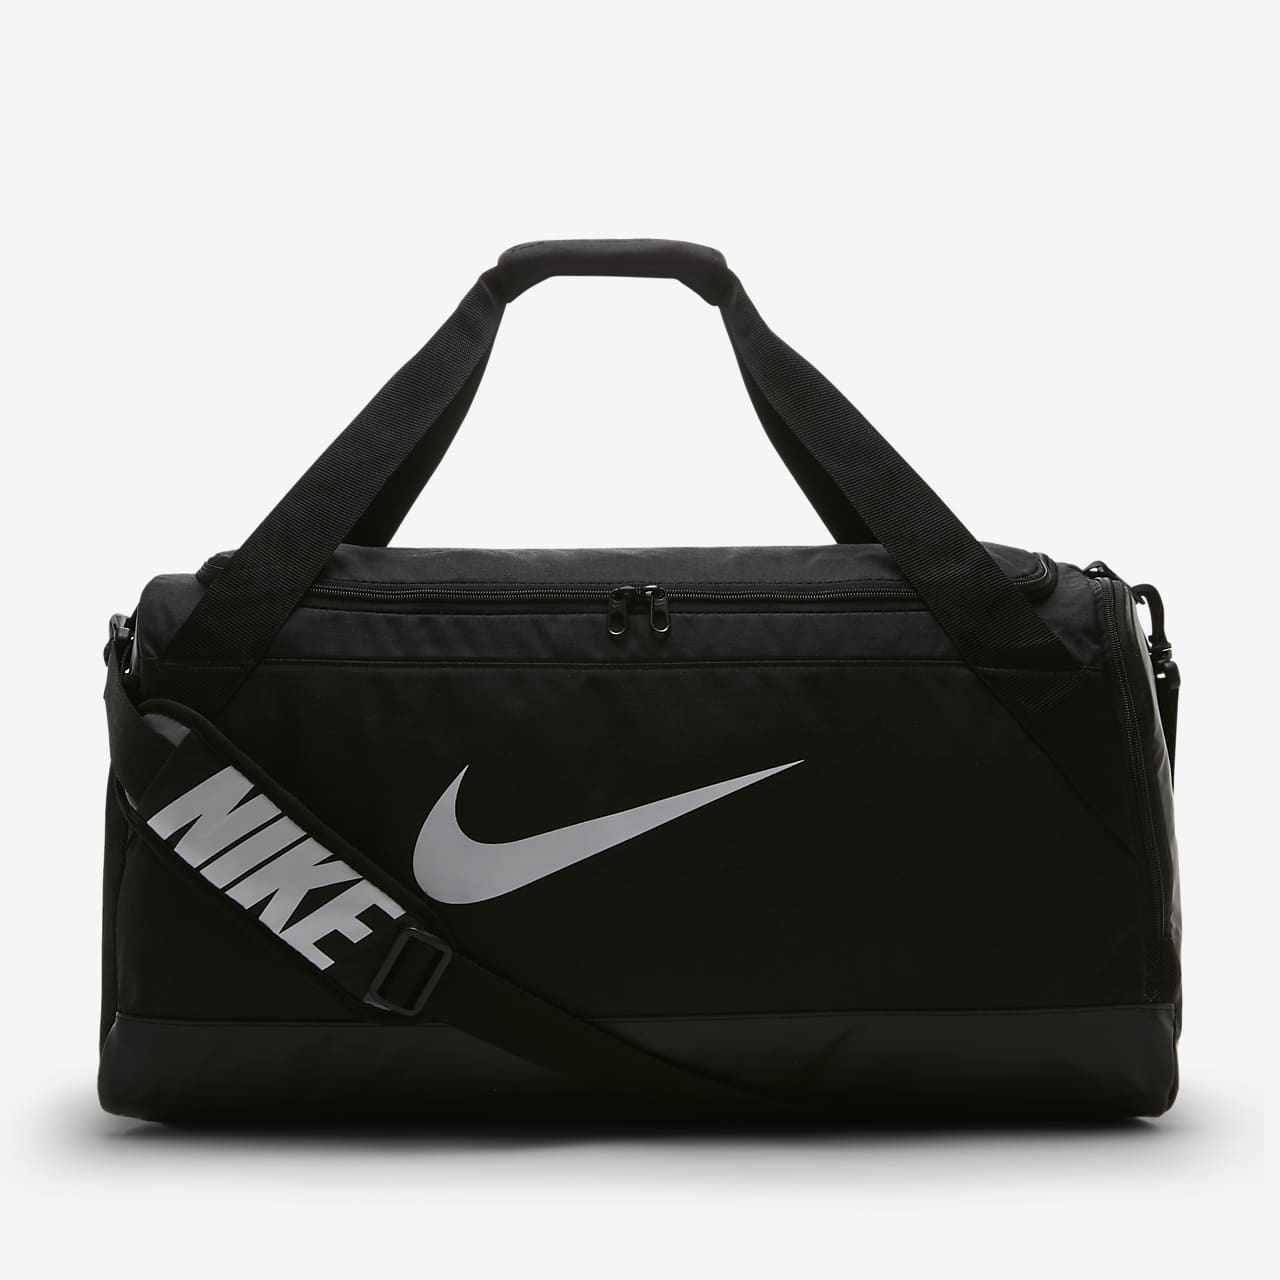 Nike Brasilia (Medium) Training Duffel 